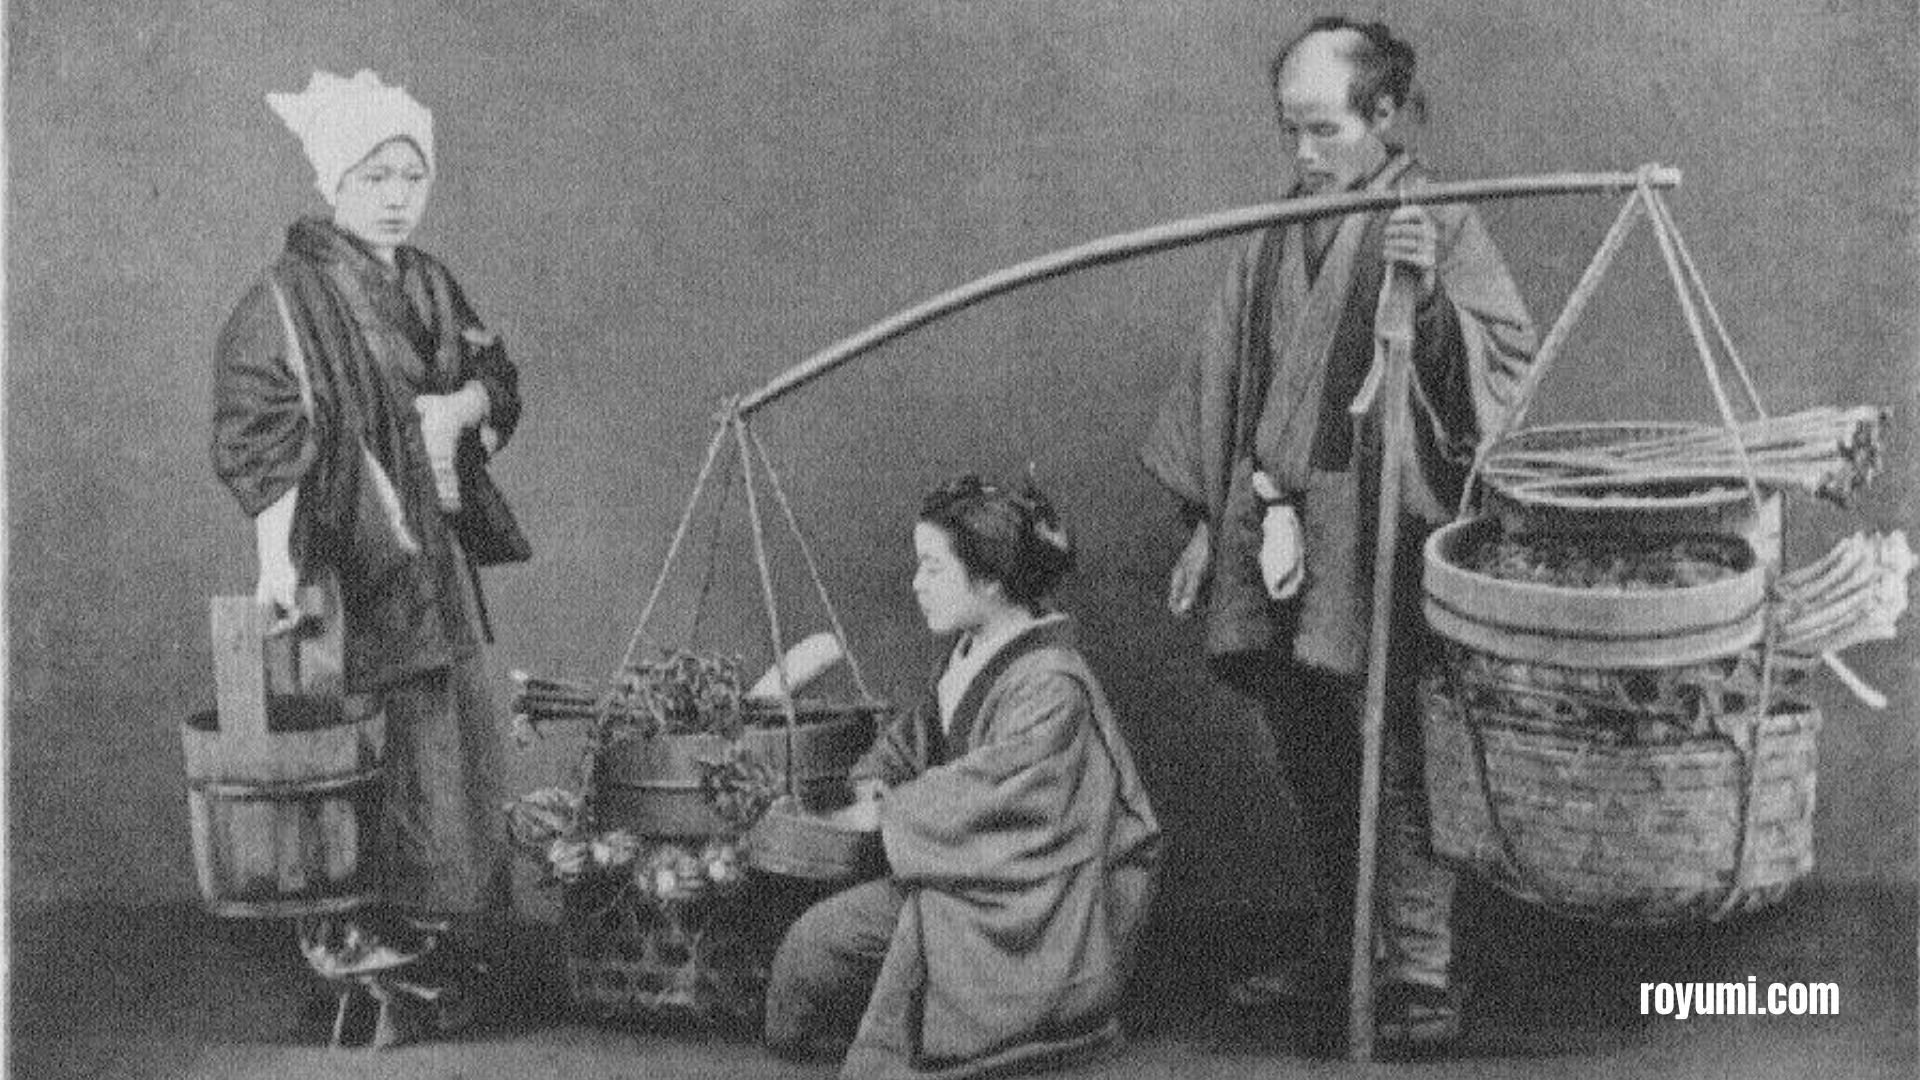 貿易の道: 江戸時代の商人の魅惑的な生活